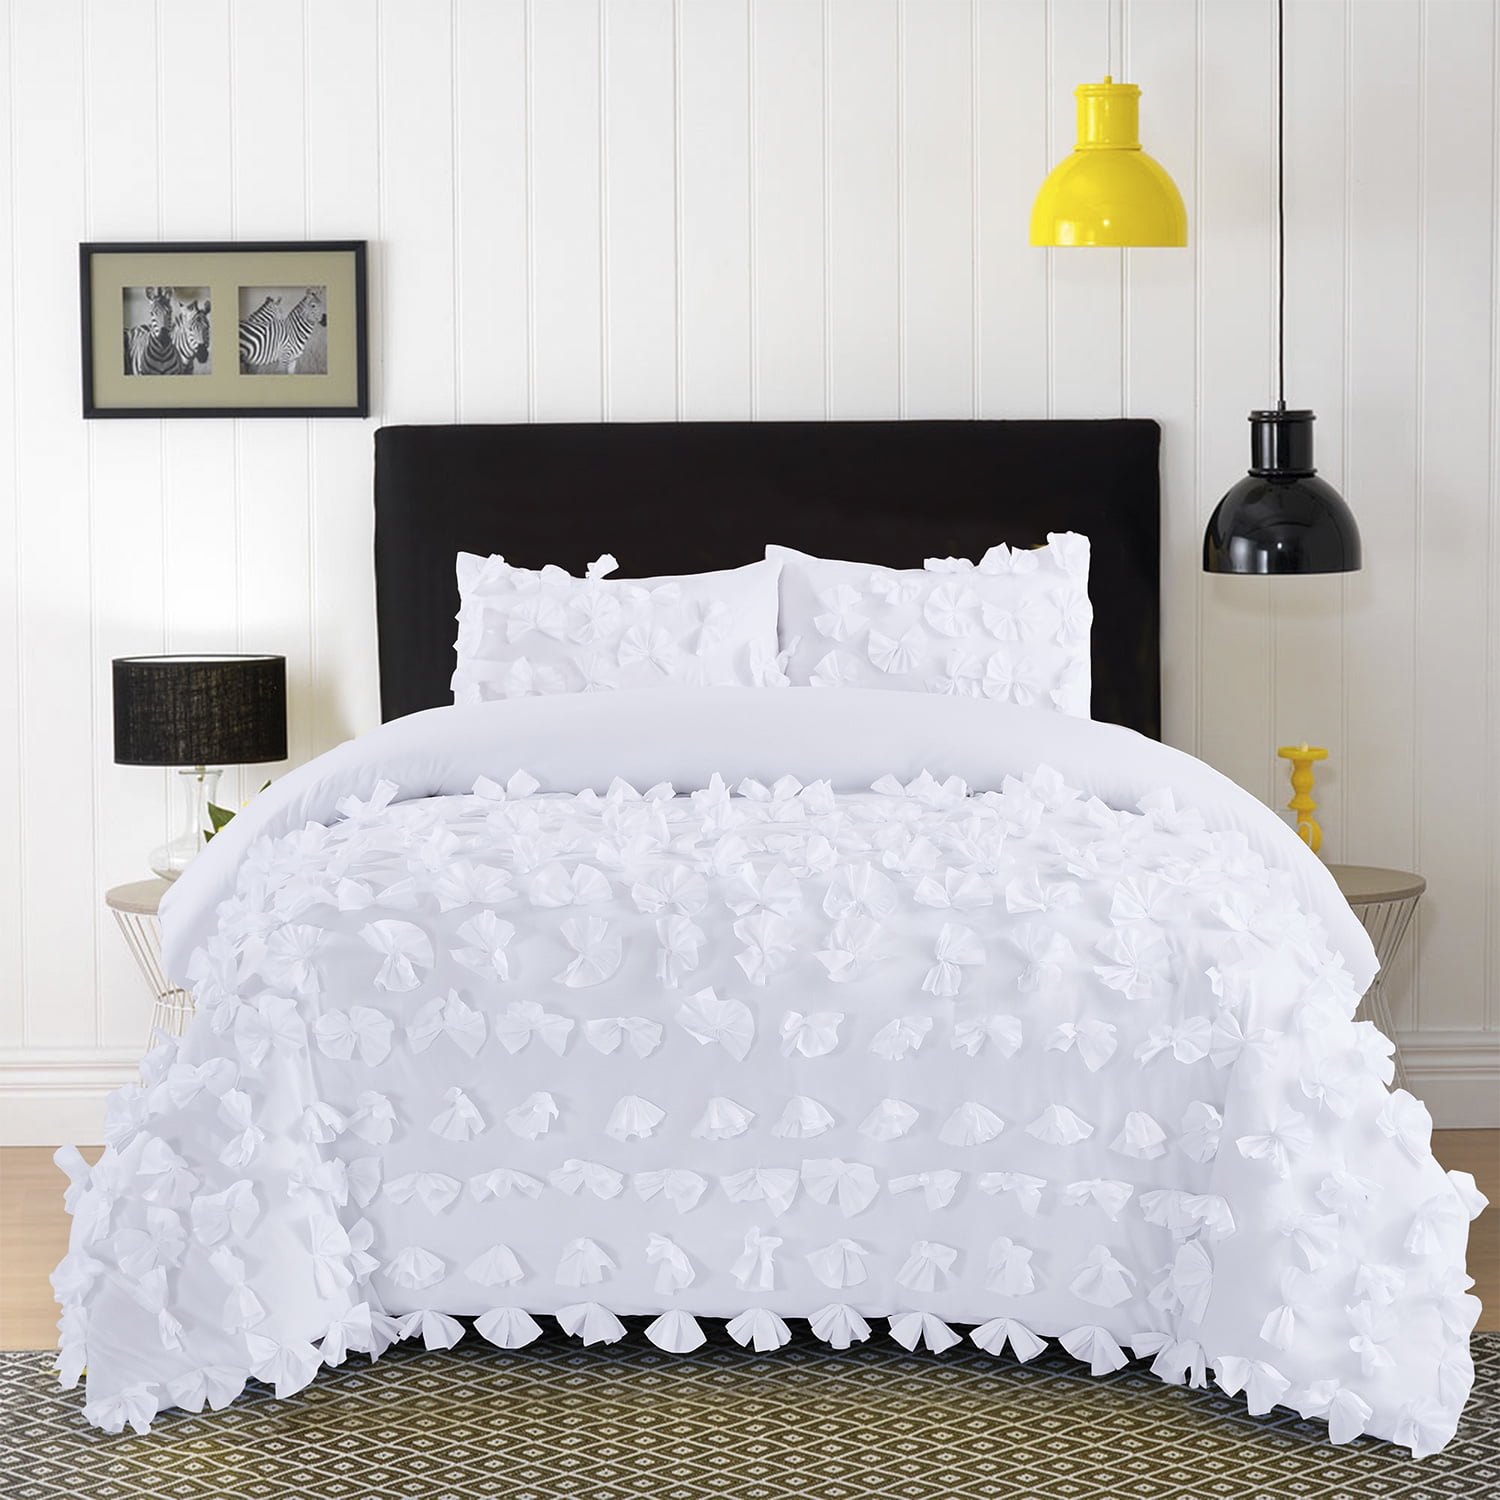 Details about   Solid Blue Crinkled Velvet 7 pc Comforter Set Queen King Glam Elegant Bedding 